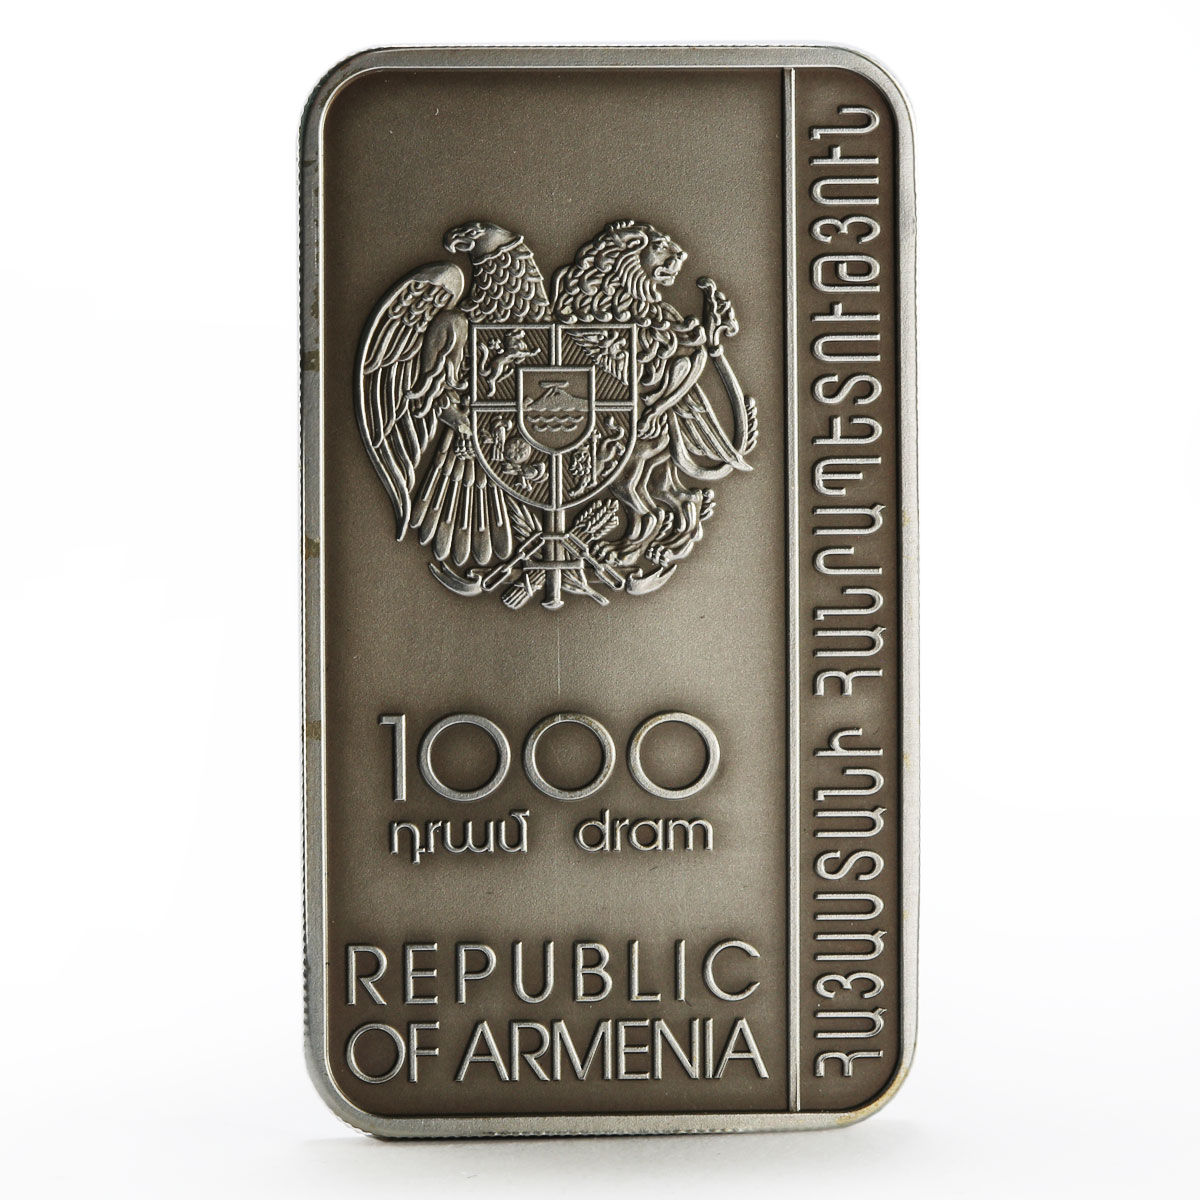 Armenia 1000 dram Noravank Monastery Khachkar Monastery rood silver coin 2011